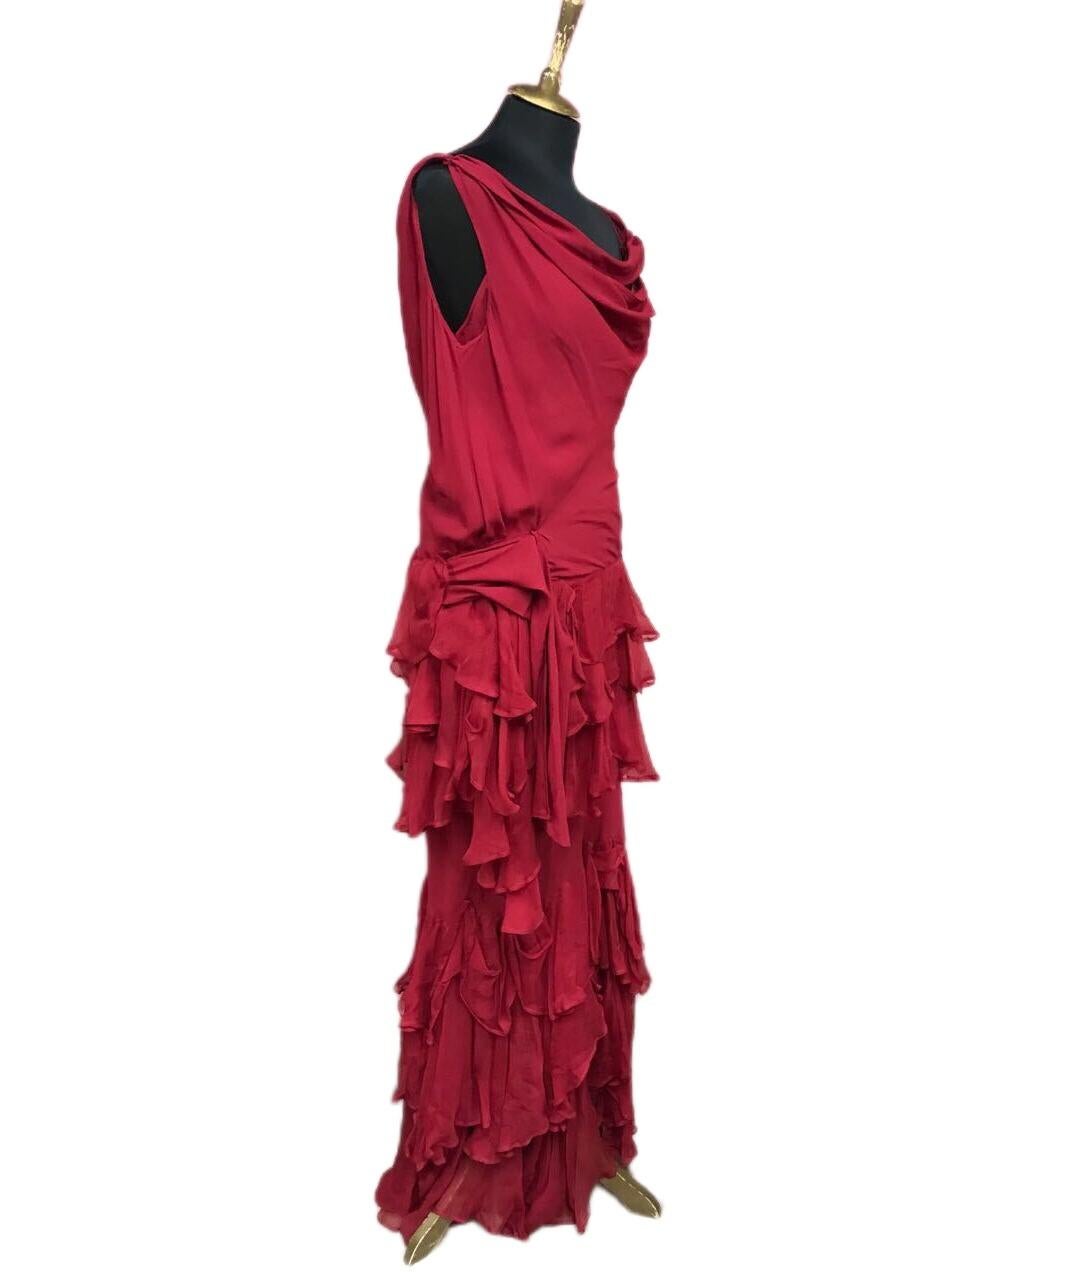 dior red dress vintage